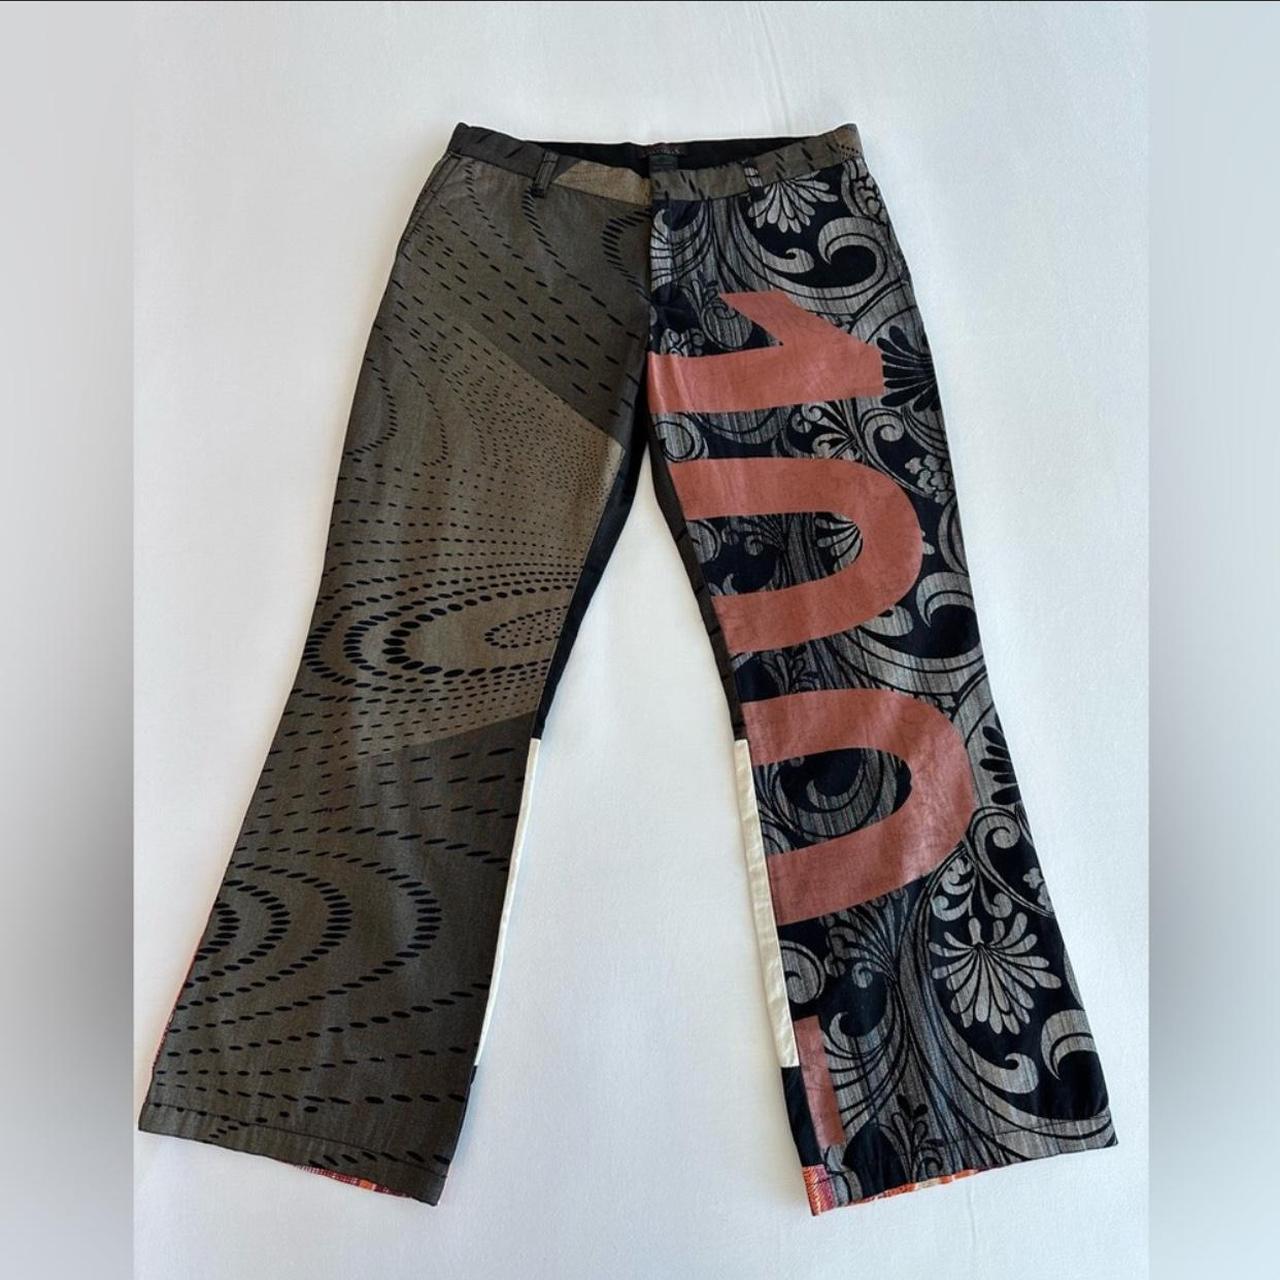 Diesel geometric-pattern straight-leg Trousers - Farfetch